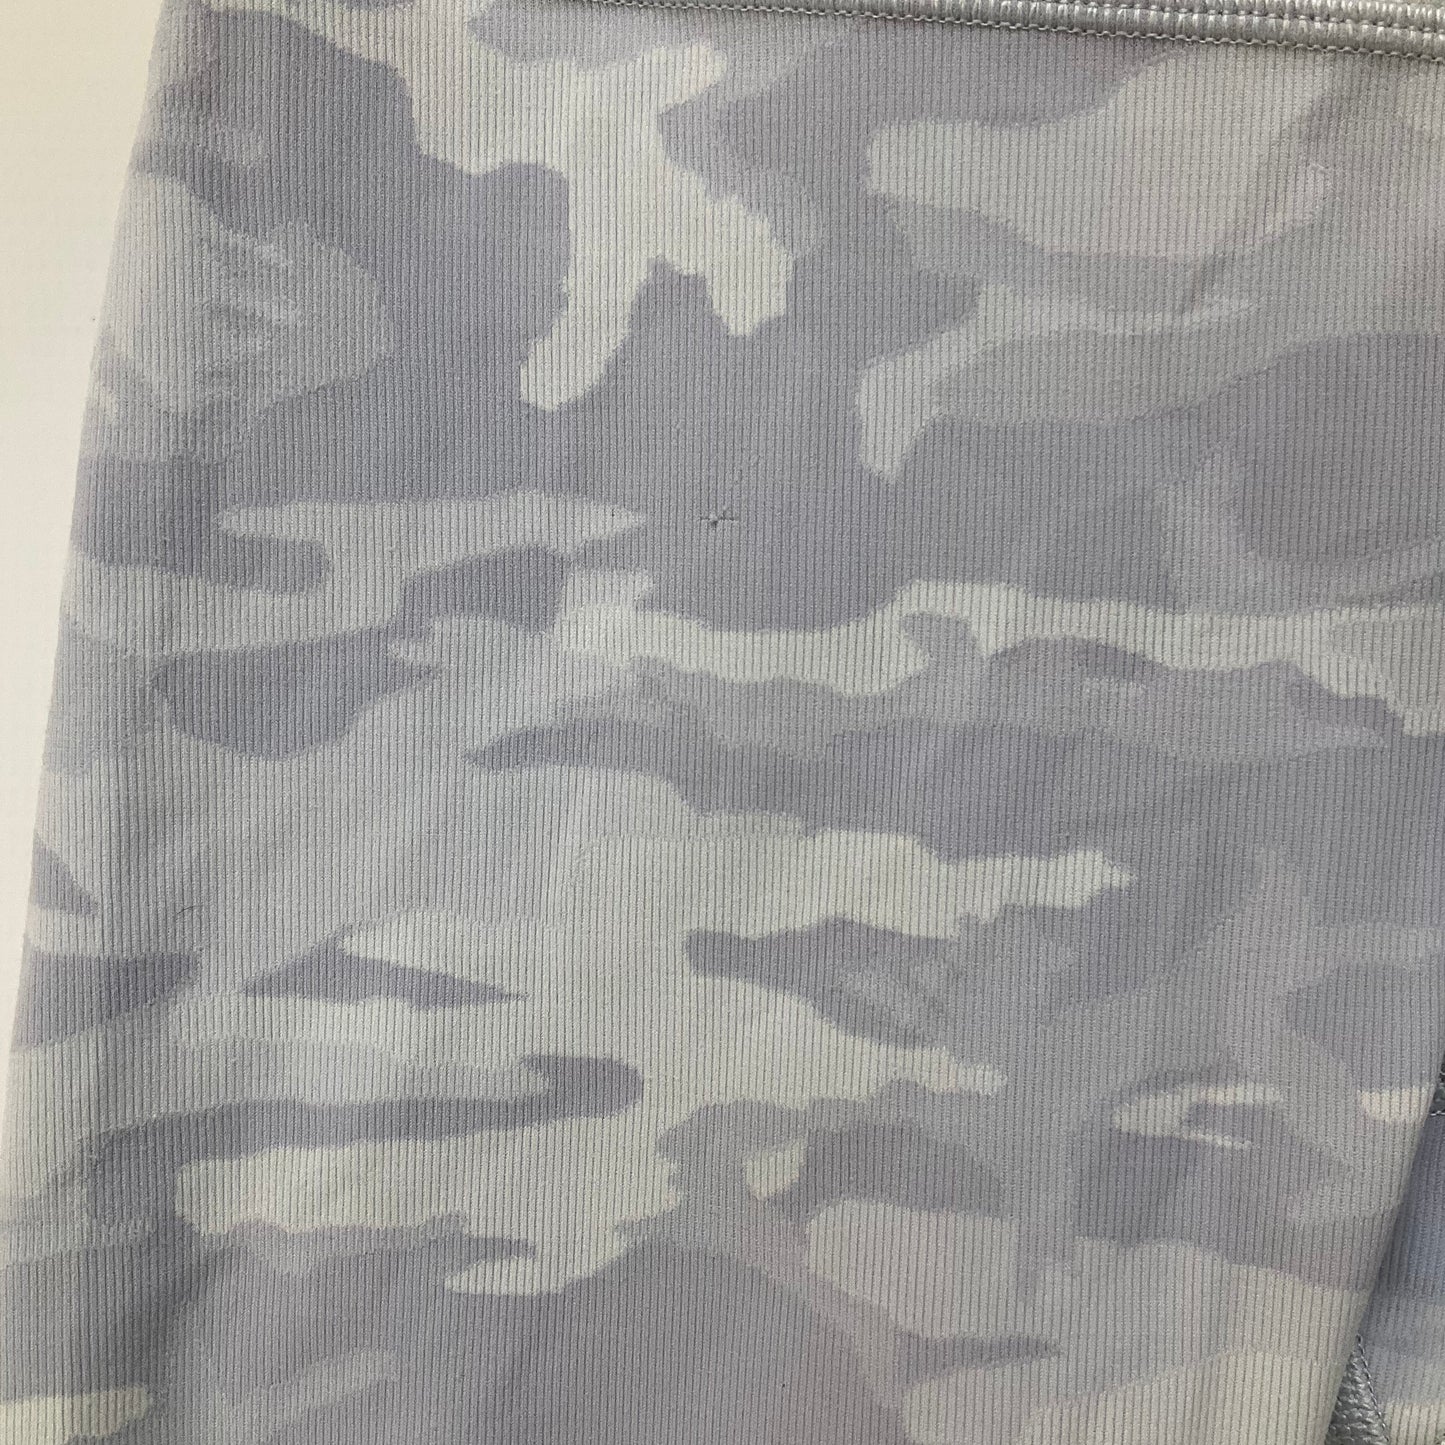 Camouflage Print Athletic Shorts Lululemon, Size 6